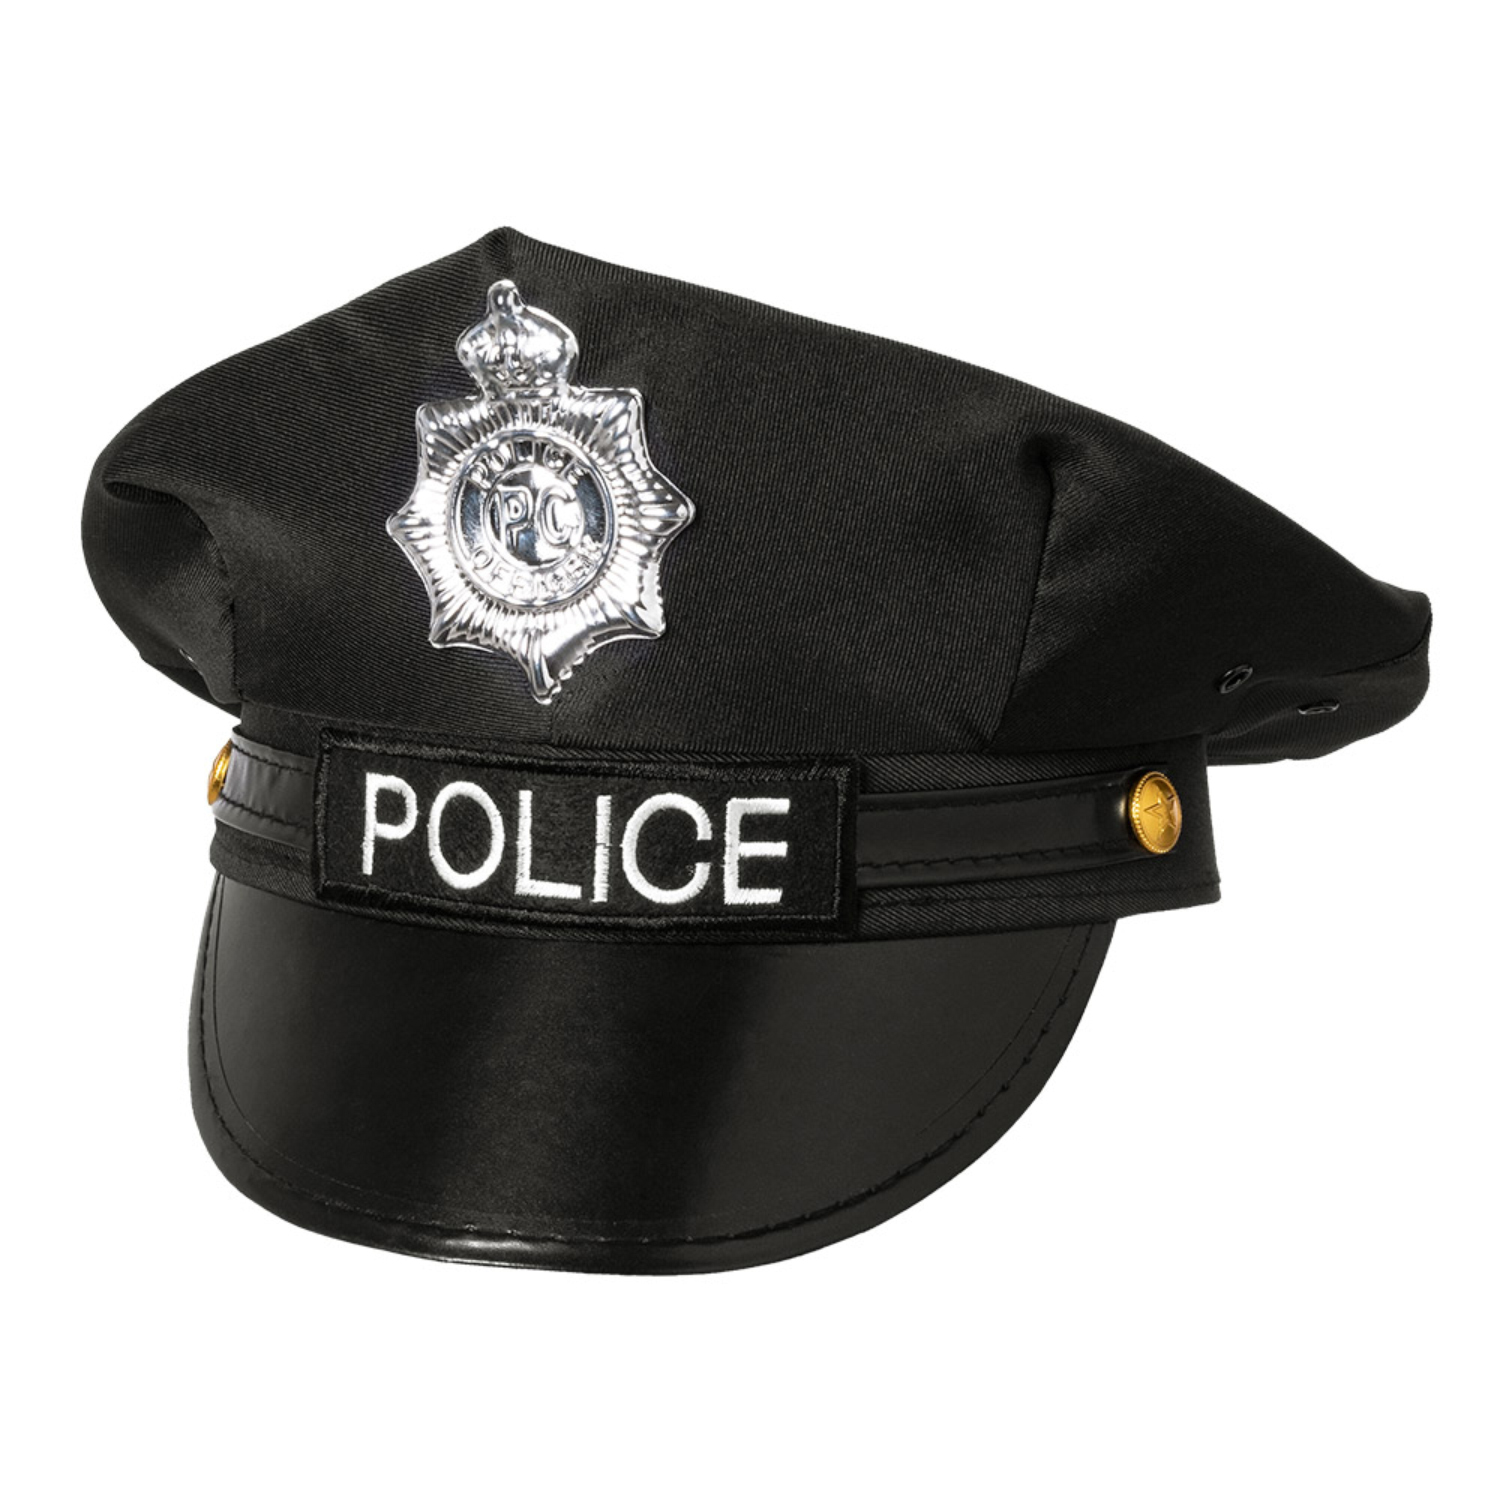 NEU Hut/Mütze Police, schwarz, größenverstellbar